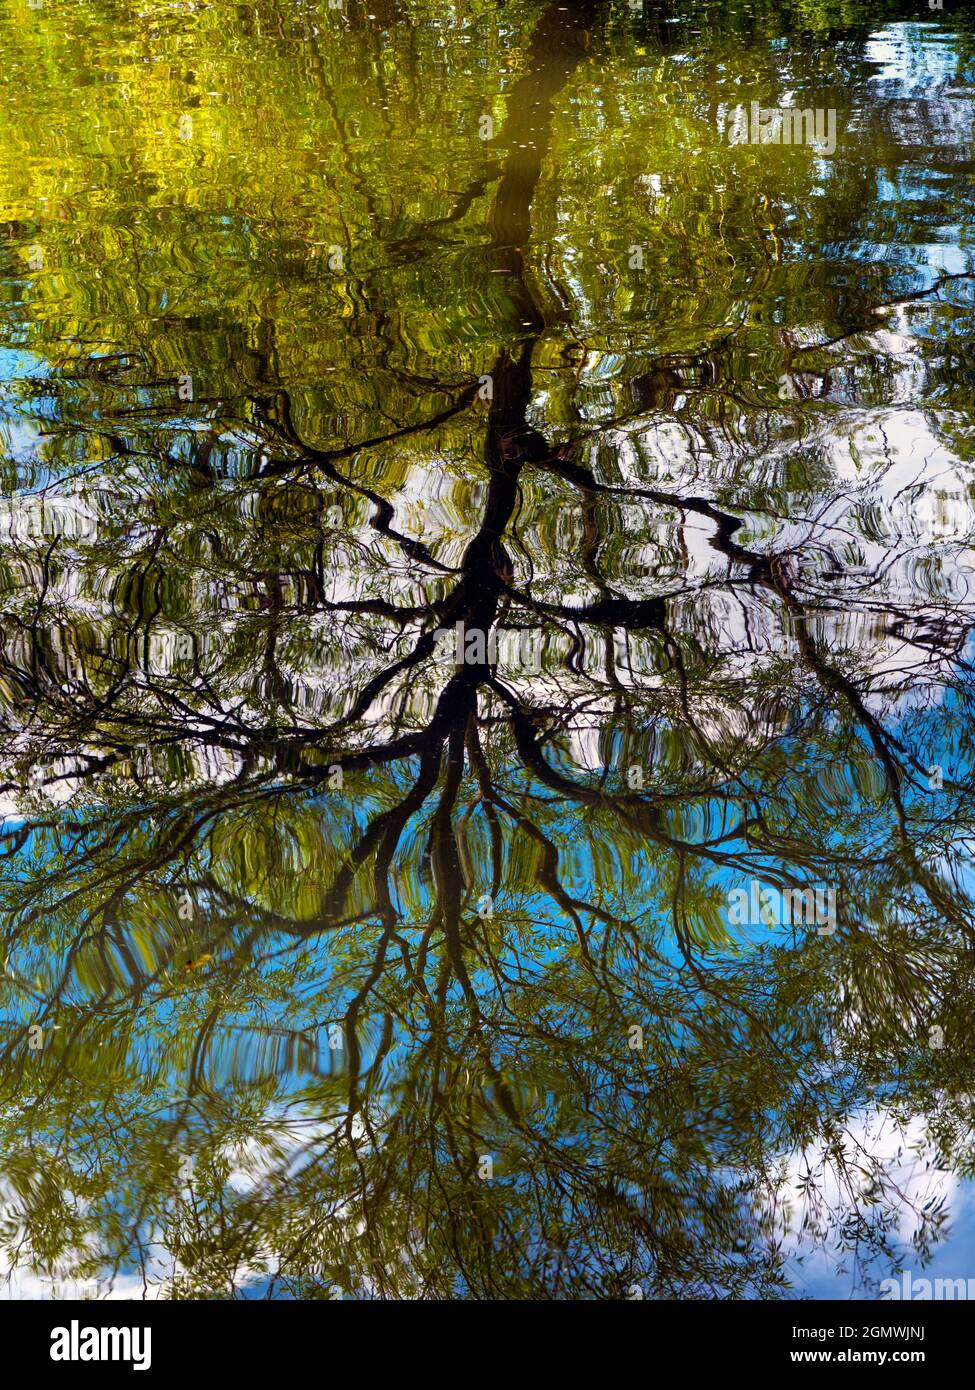 Oxford, England - 2. Juli 2019 Abstraktes Bild eines Baumes, der sich in der Themse in der Nähe von Port Meadow, Oxford, widerspiegelt. Keine Betrügereien in Photoshop, nur s Stockfoto